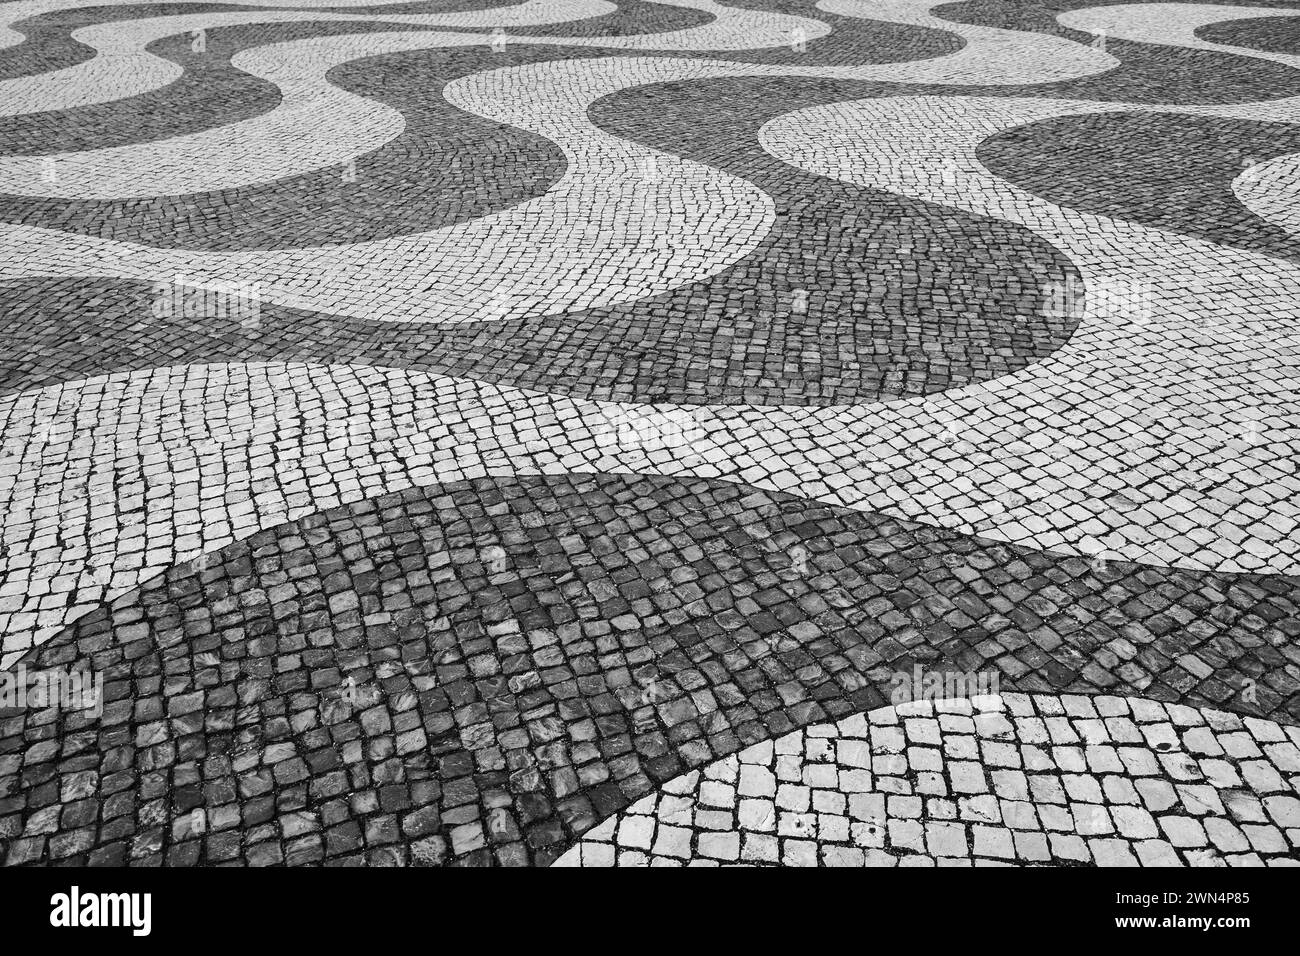 Tipica pavimentazione portoghese in pietra di ciottoli a mosaico a Lisbona, Portogallo, bianco e nero. Foto Stock